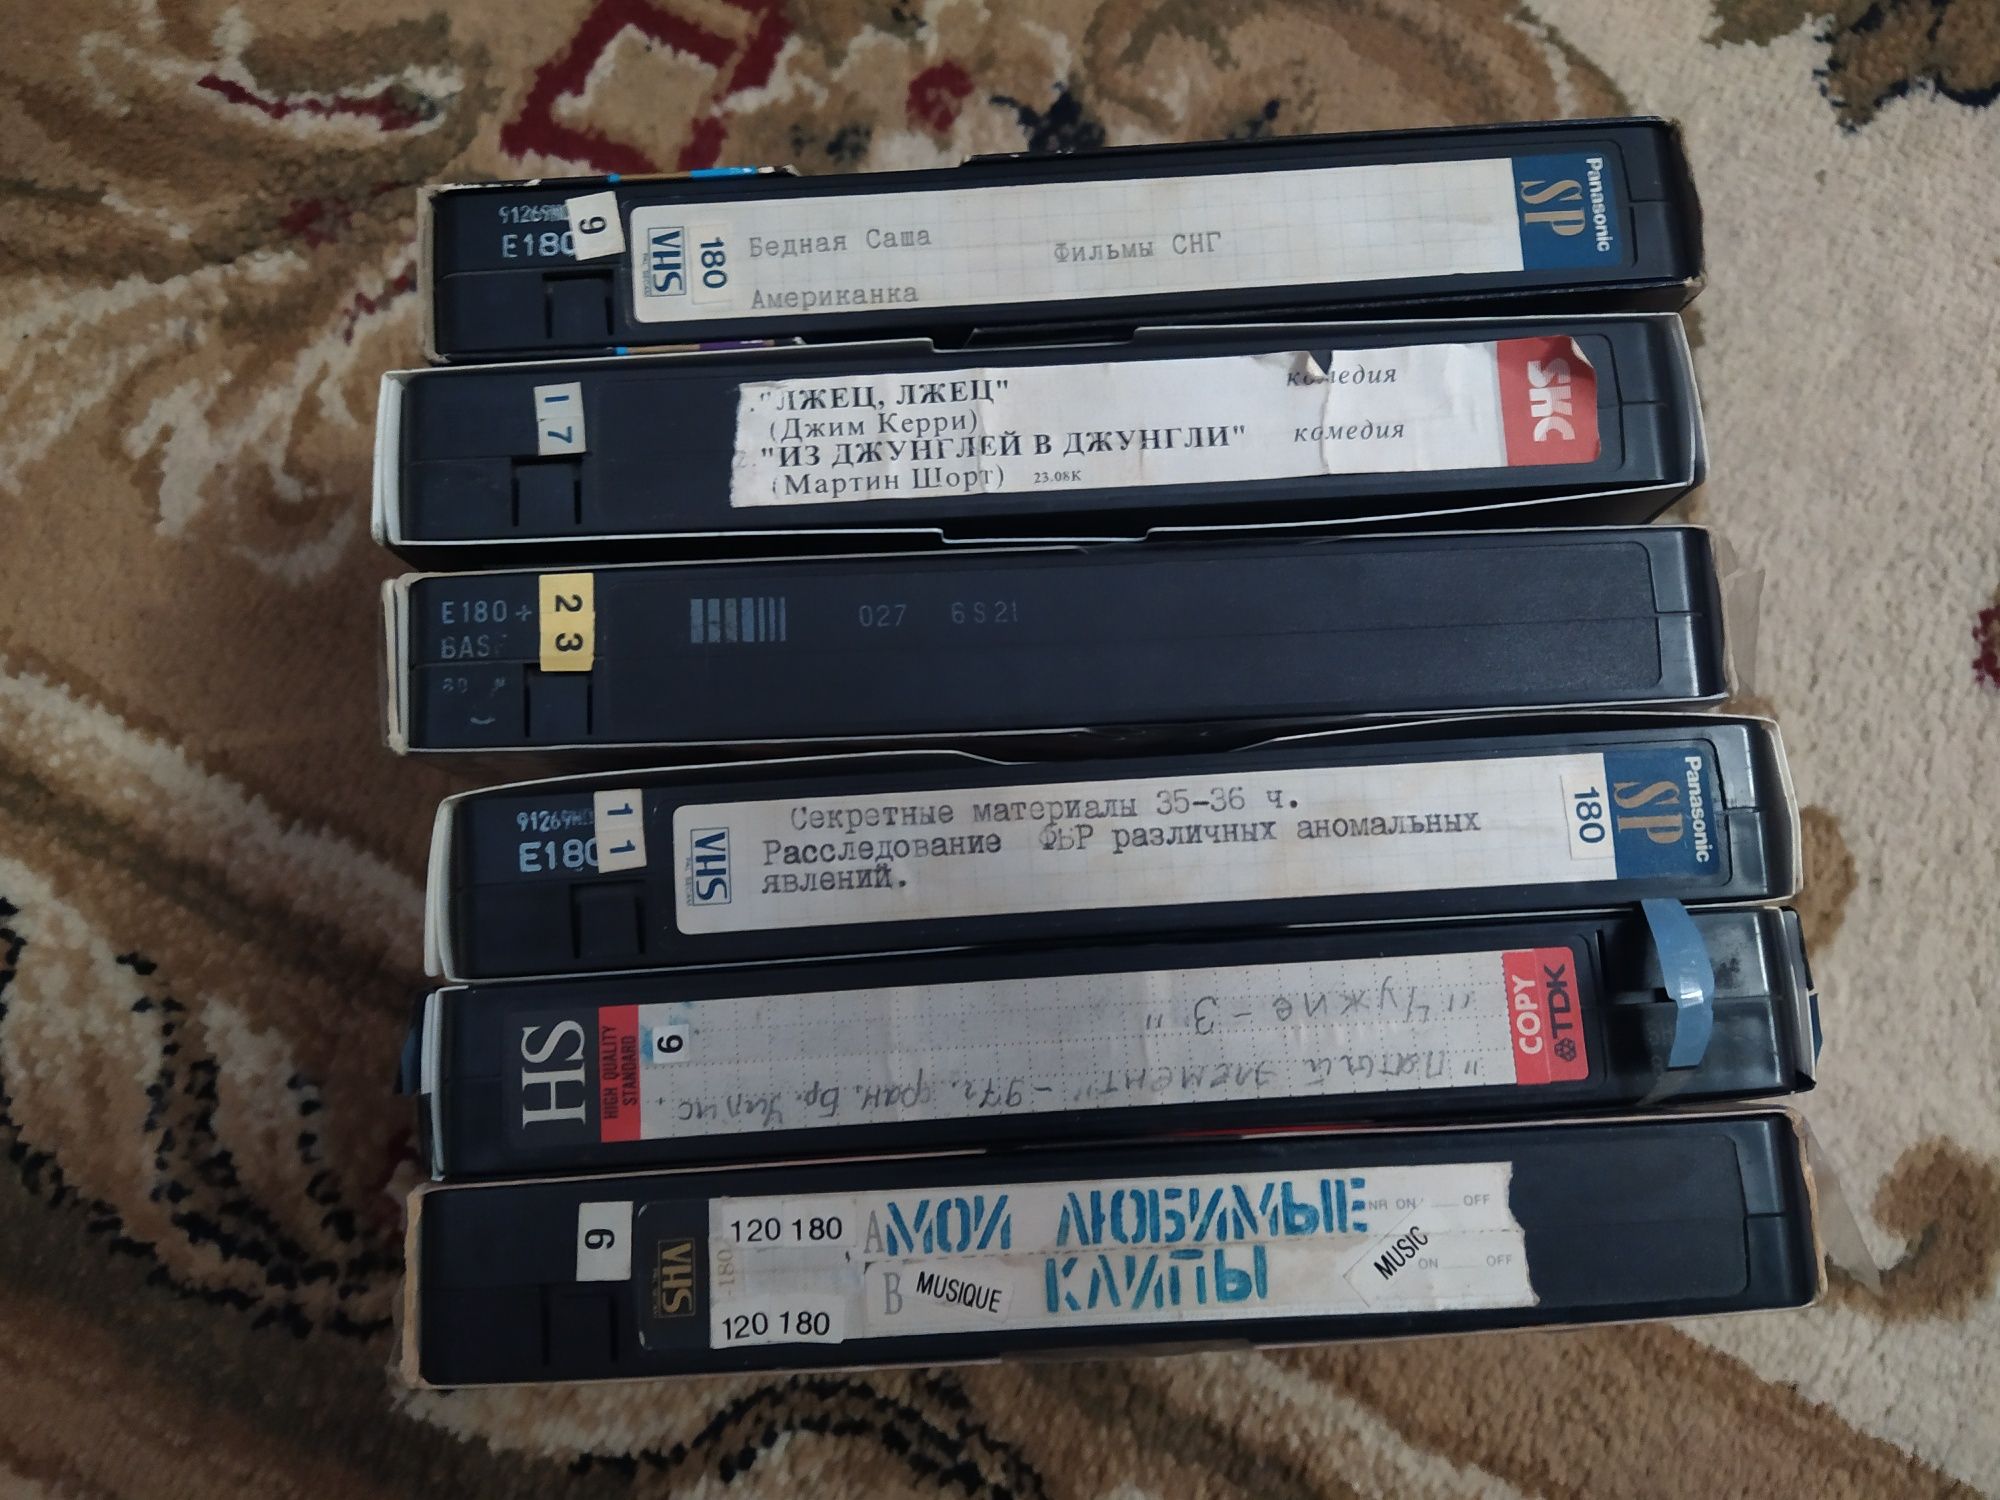 Диски, видео-кассеты